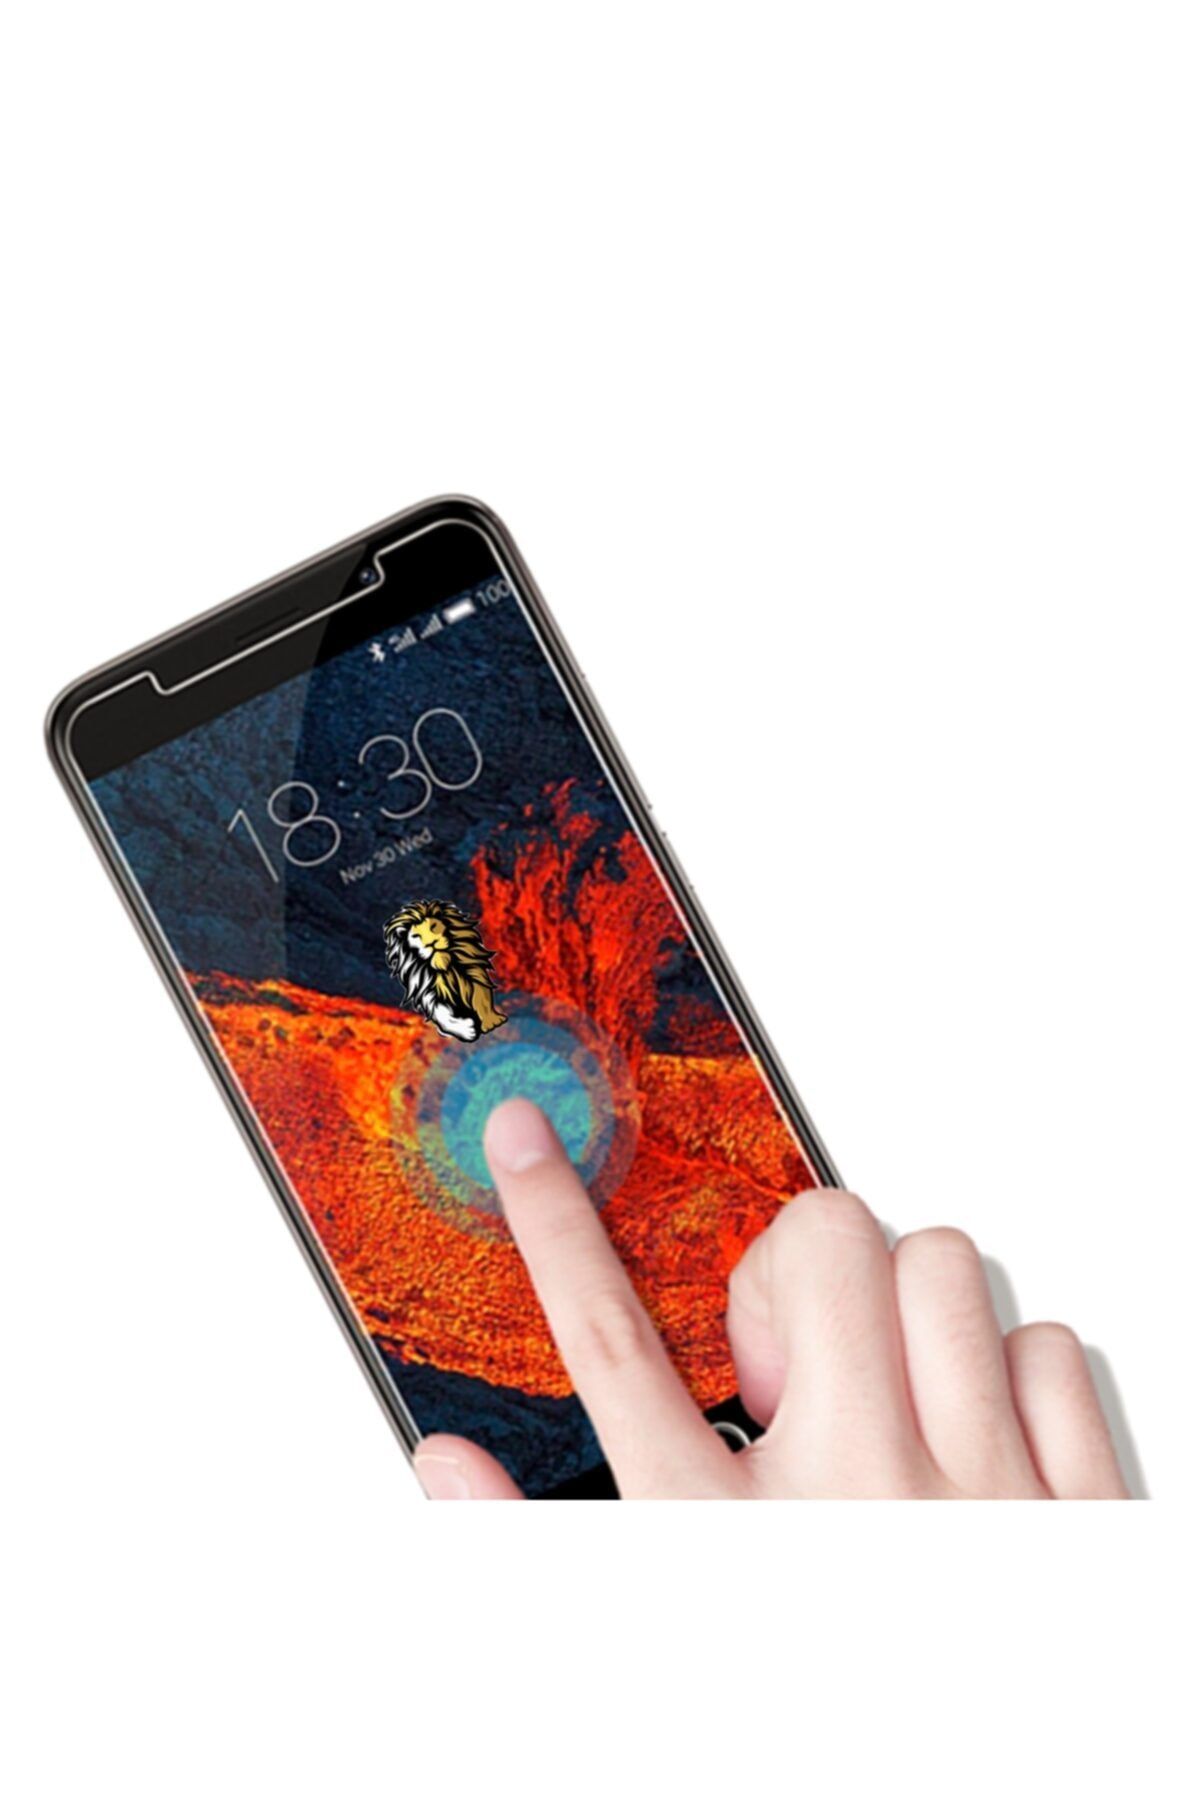 ucuzmi Samsung J7 Prime Nano Ekran Koruyucu Film Kırılmaz Cam Çizilmez Özellik 9h Hd Ekran Koruma